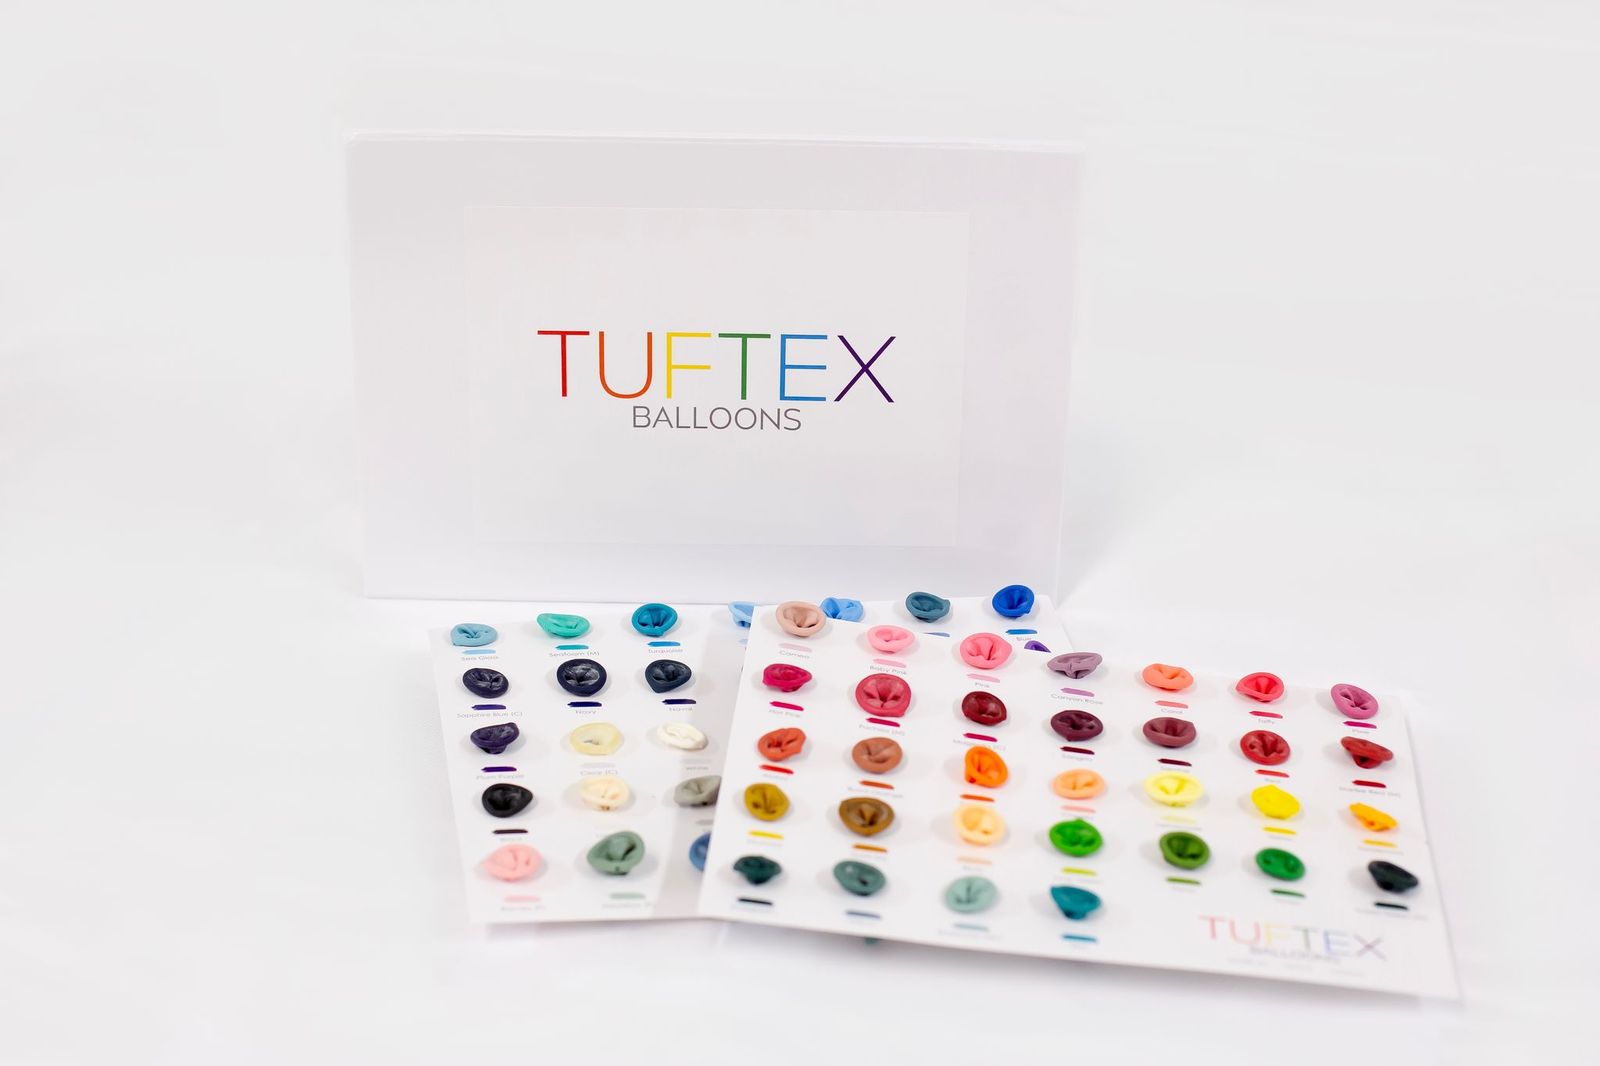 TUFTEX Portfolio